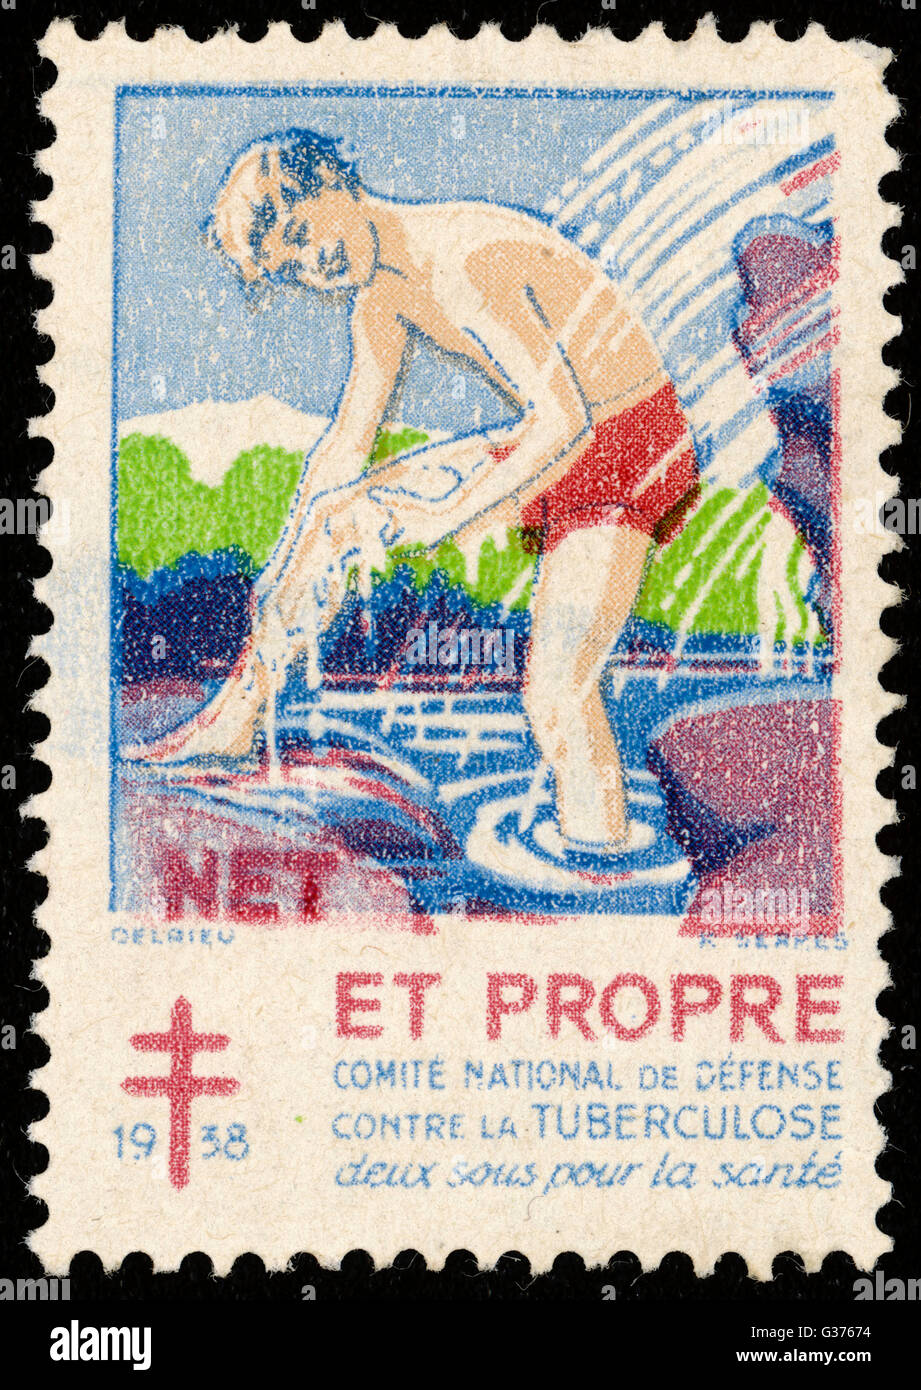 Timbre-poste français la promotion de l'echelle, de propreté et de lutte contre la tuberculose. Date : 1930 Banque D'Images